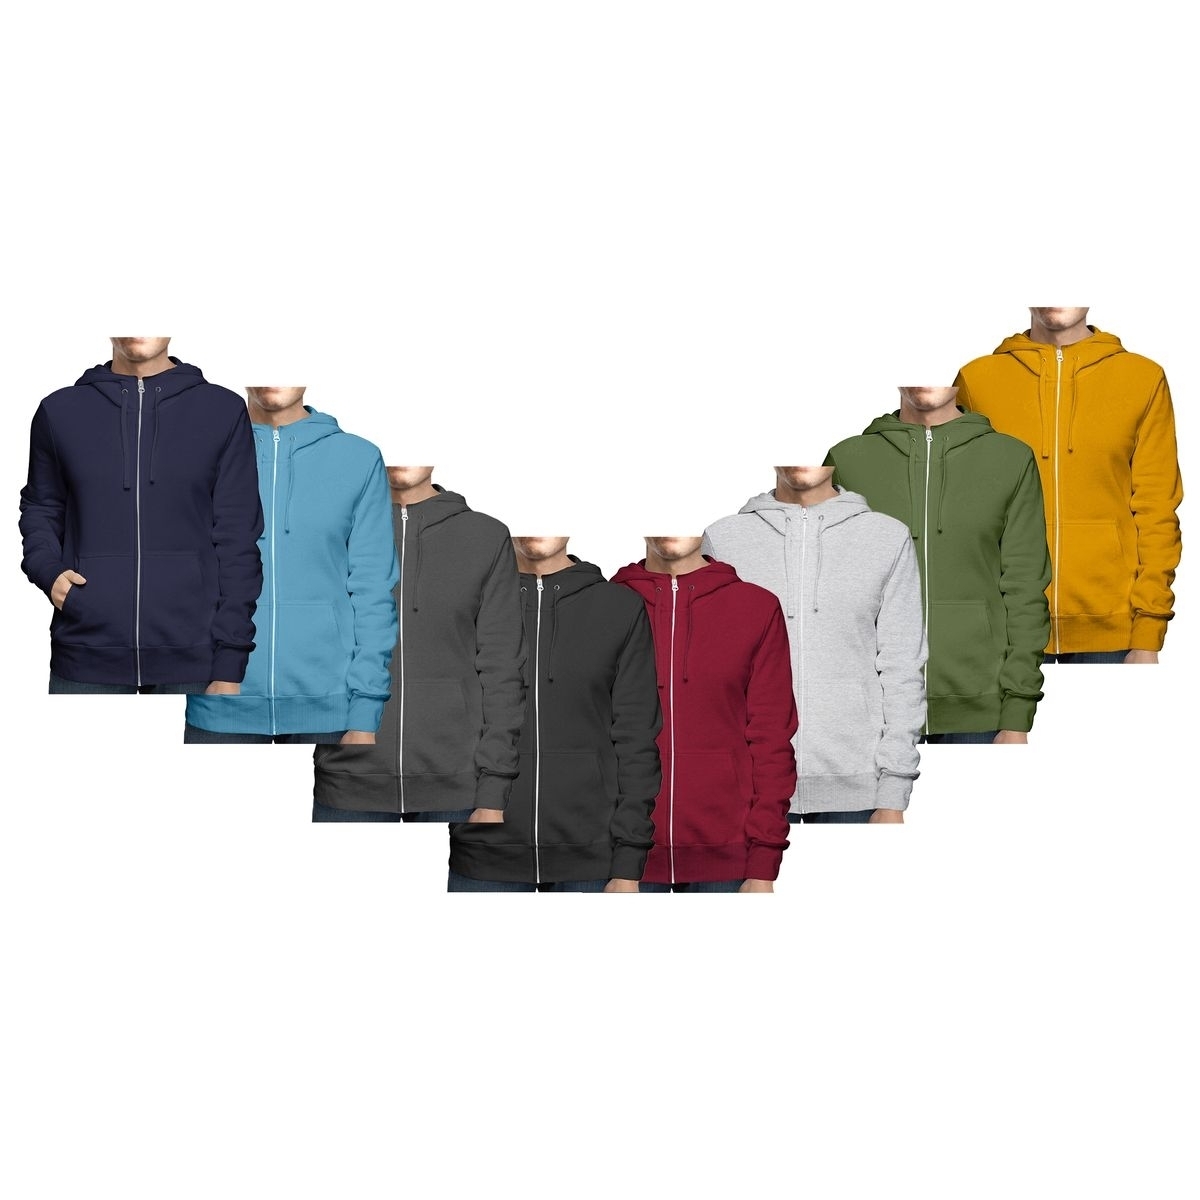 2-Pack: Men's Winter Warm Soft Cozy Full Zip-Up Fleece Lined Hoodie Sweatshirt - Medium